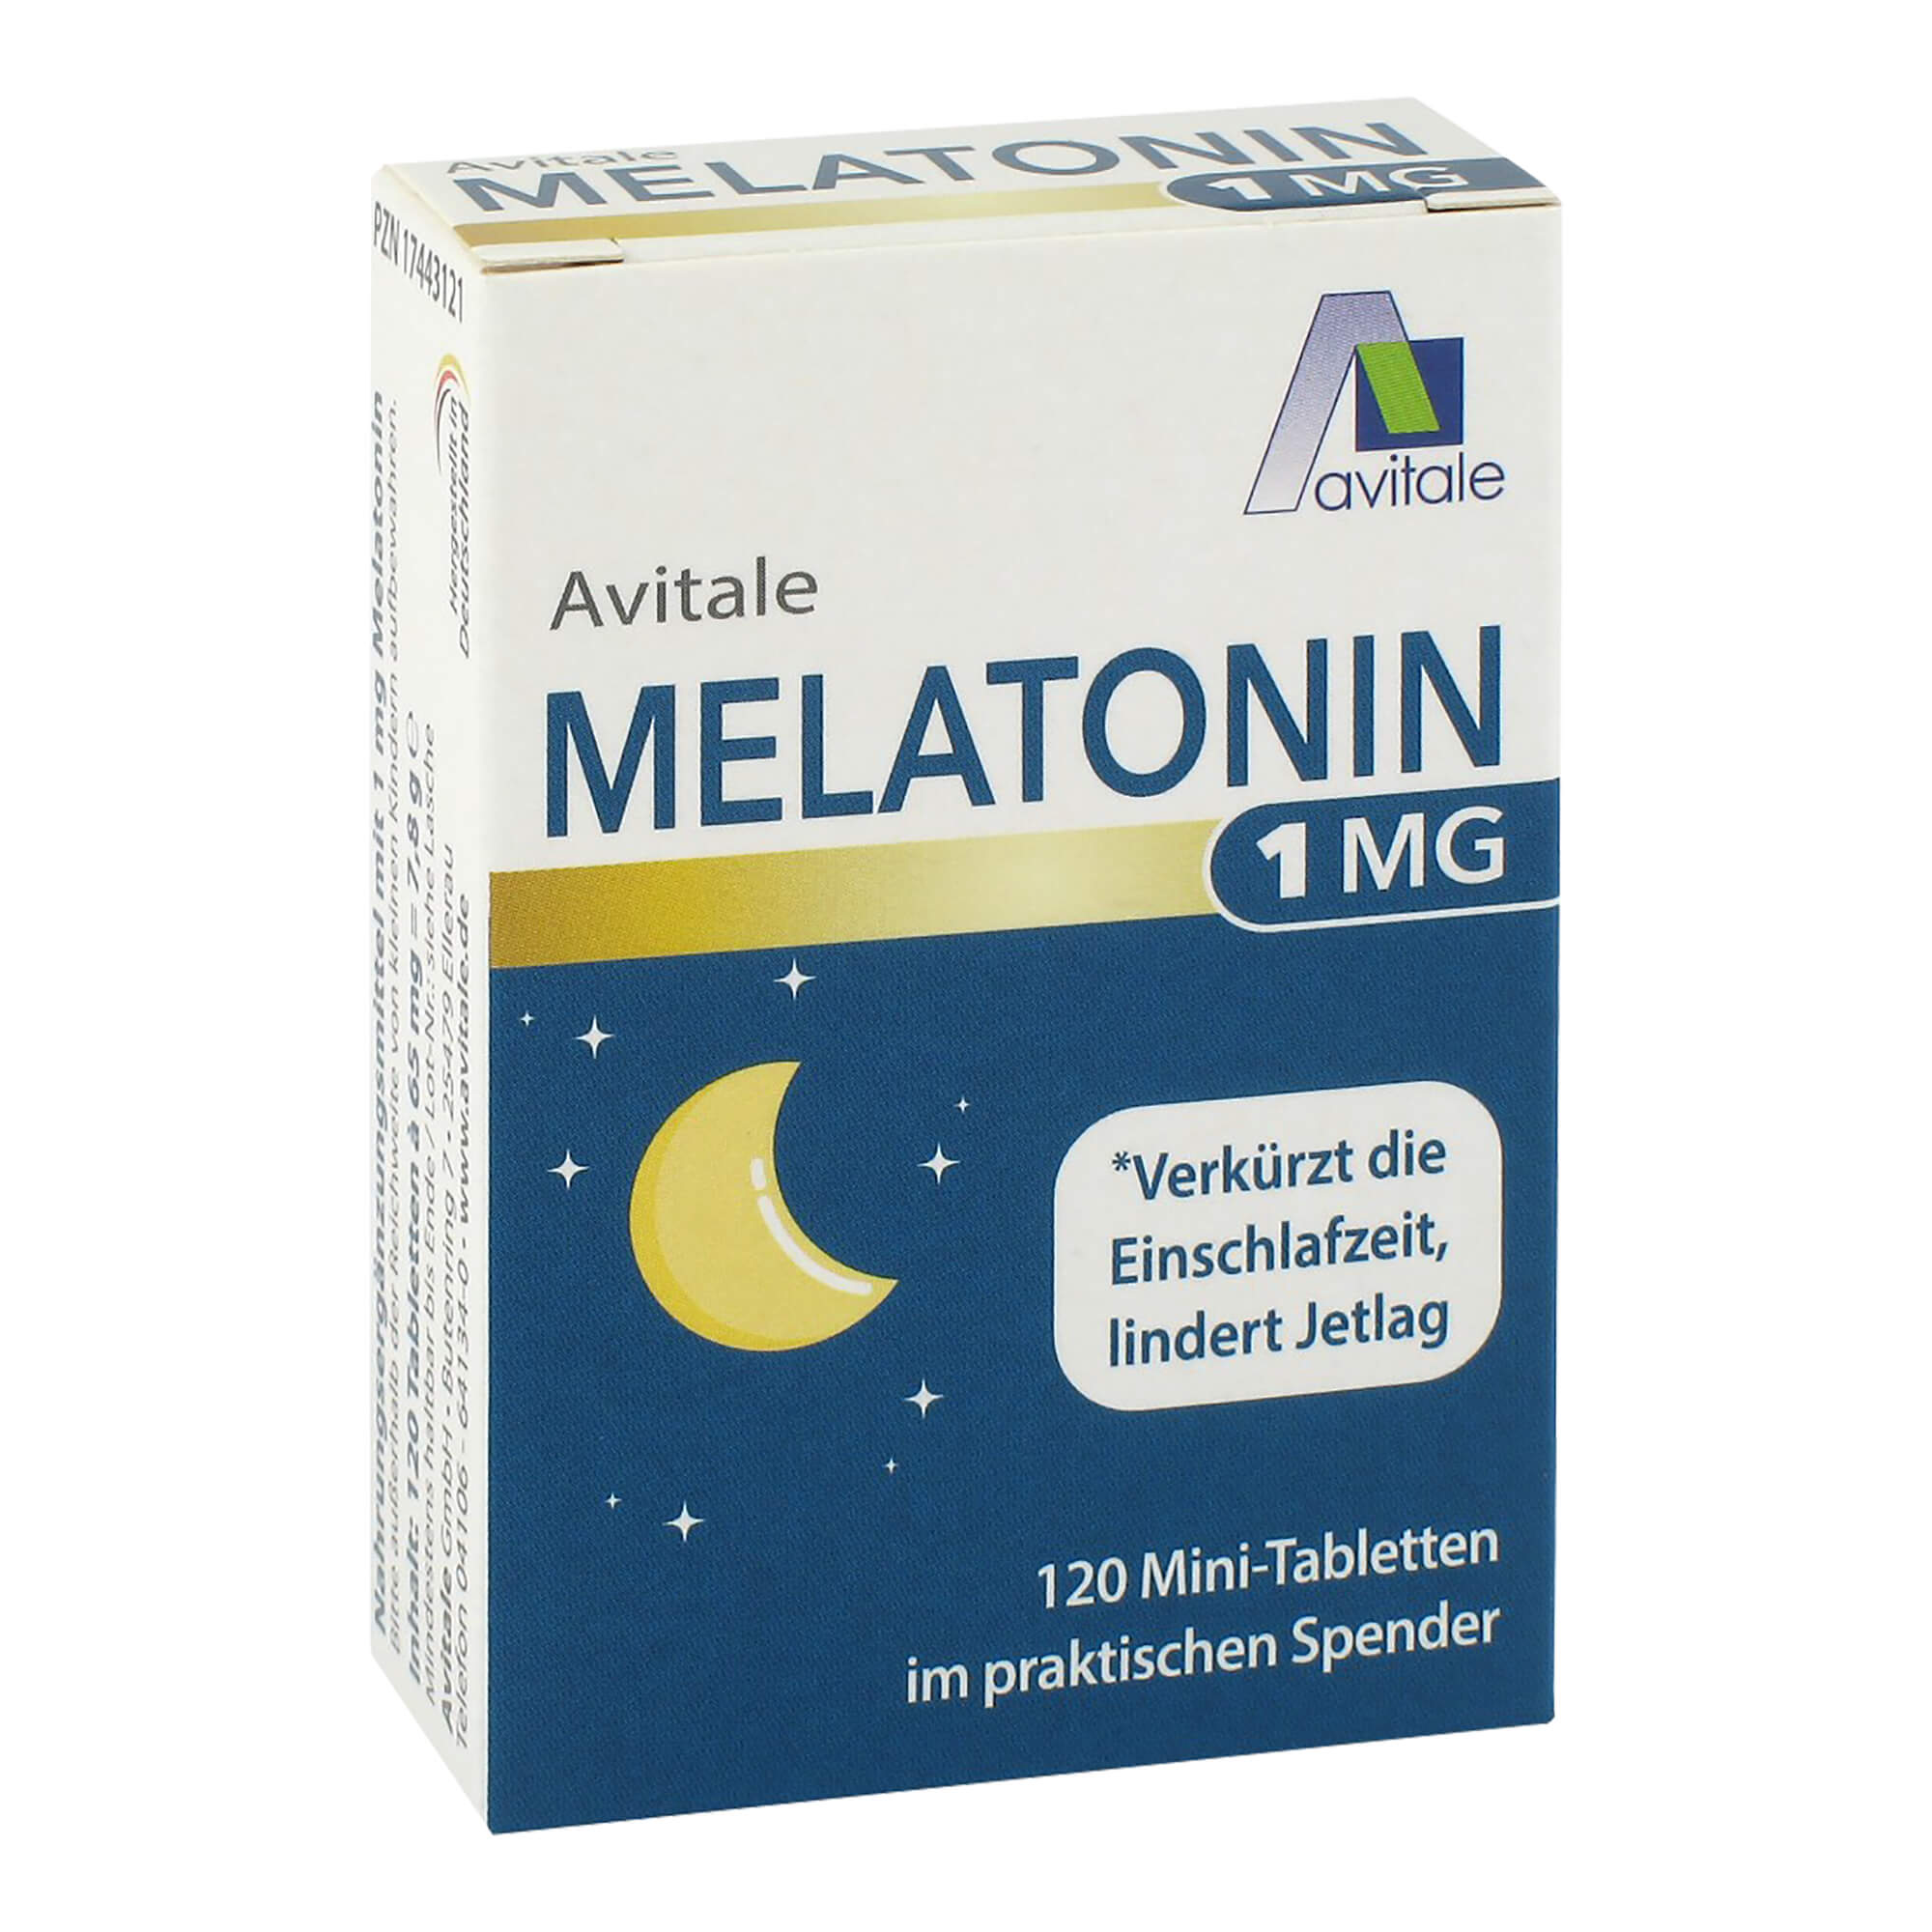 Nahrungsergänzungsmittel mit 1 mg Melatonin.